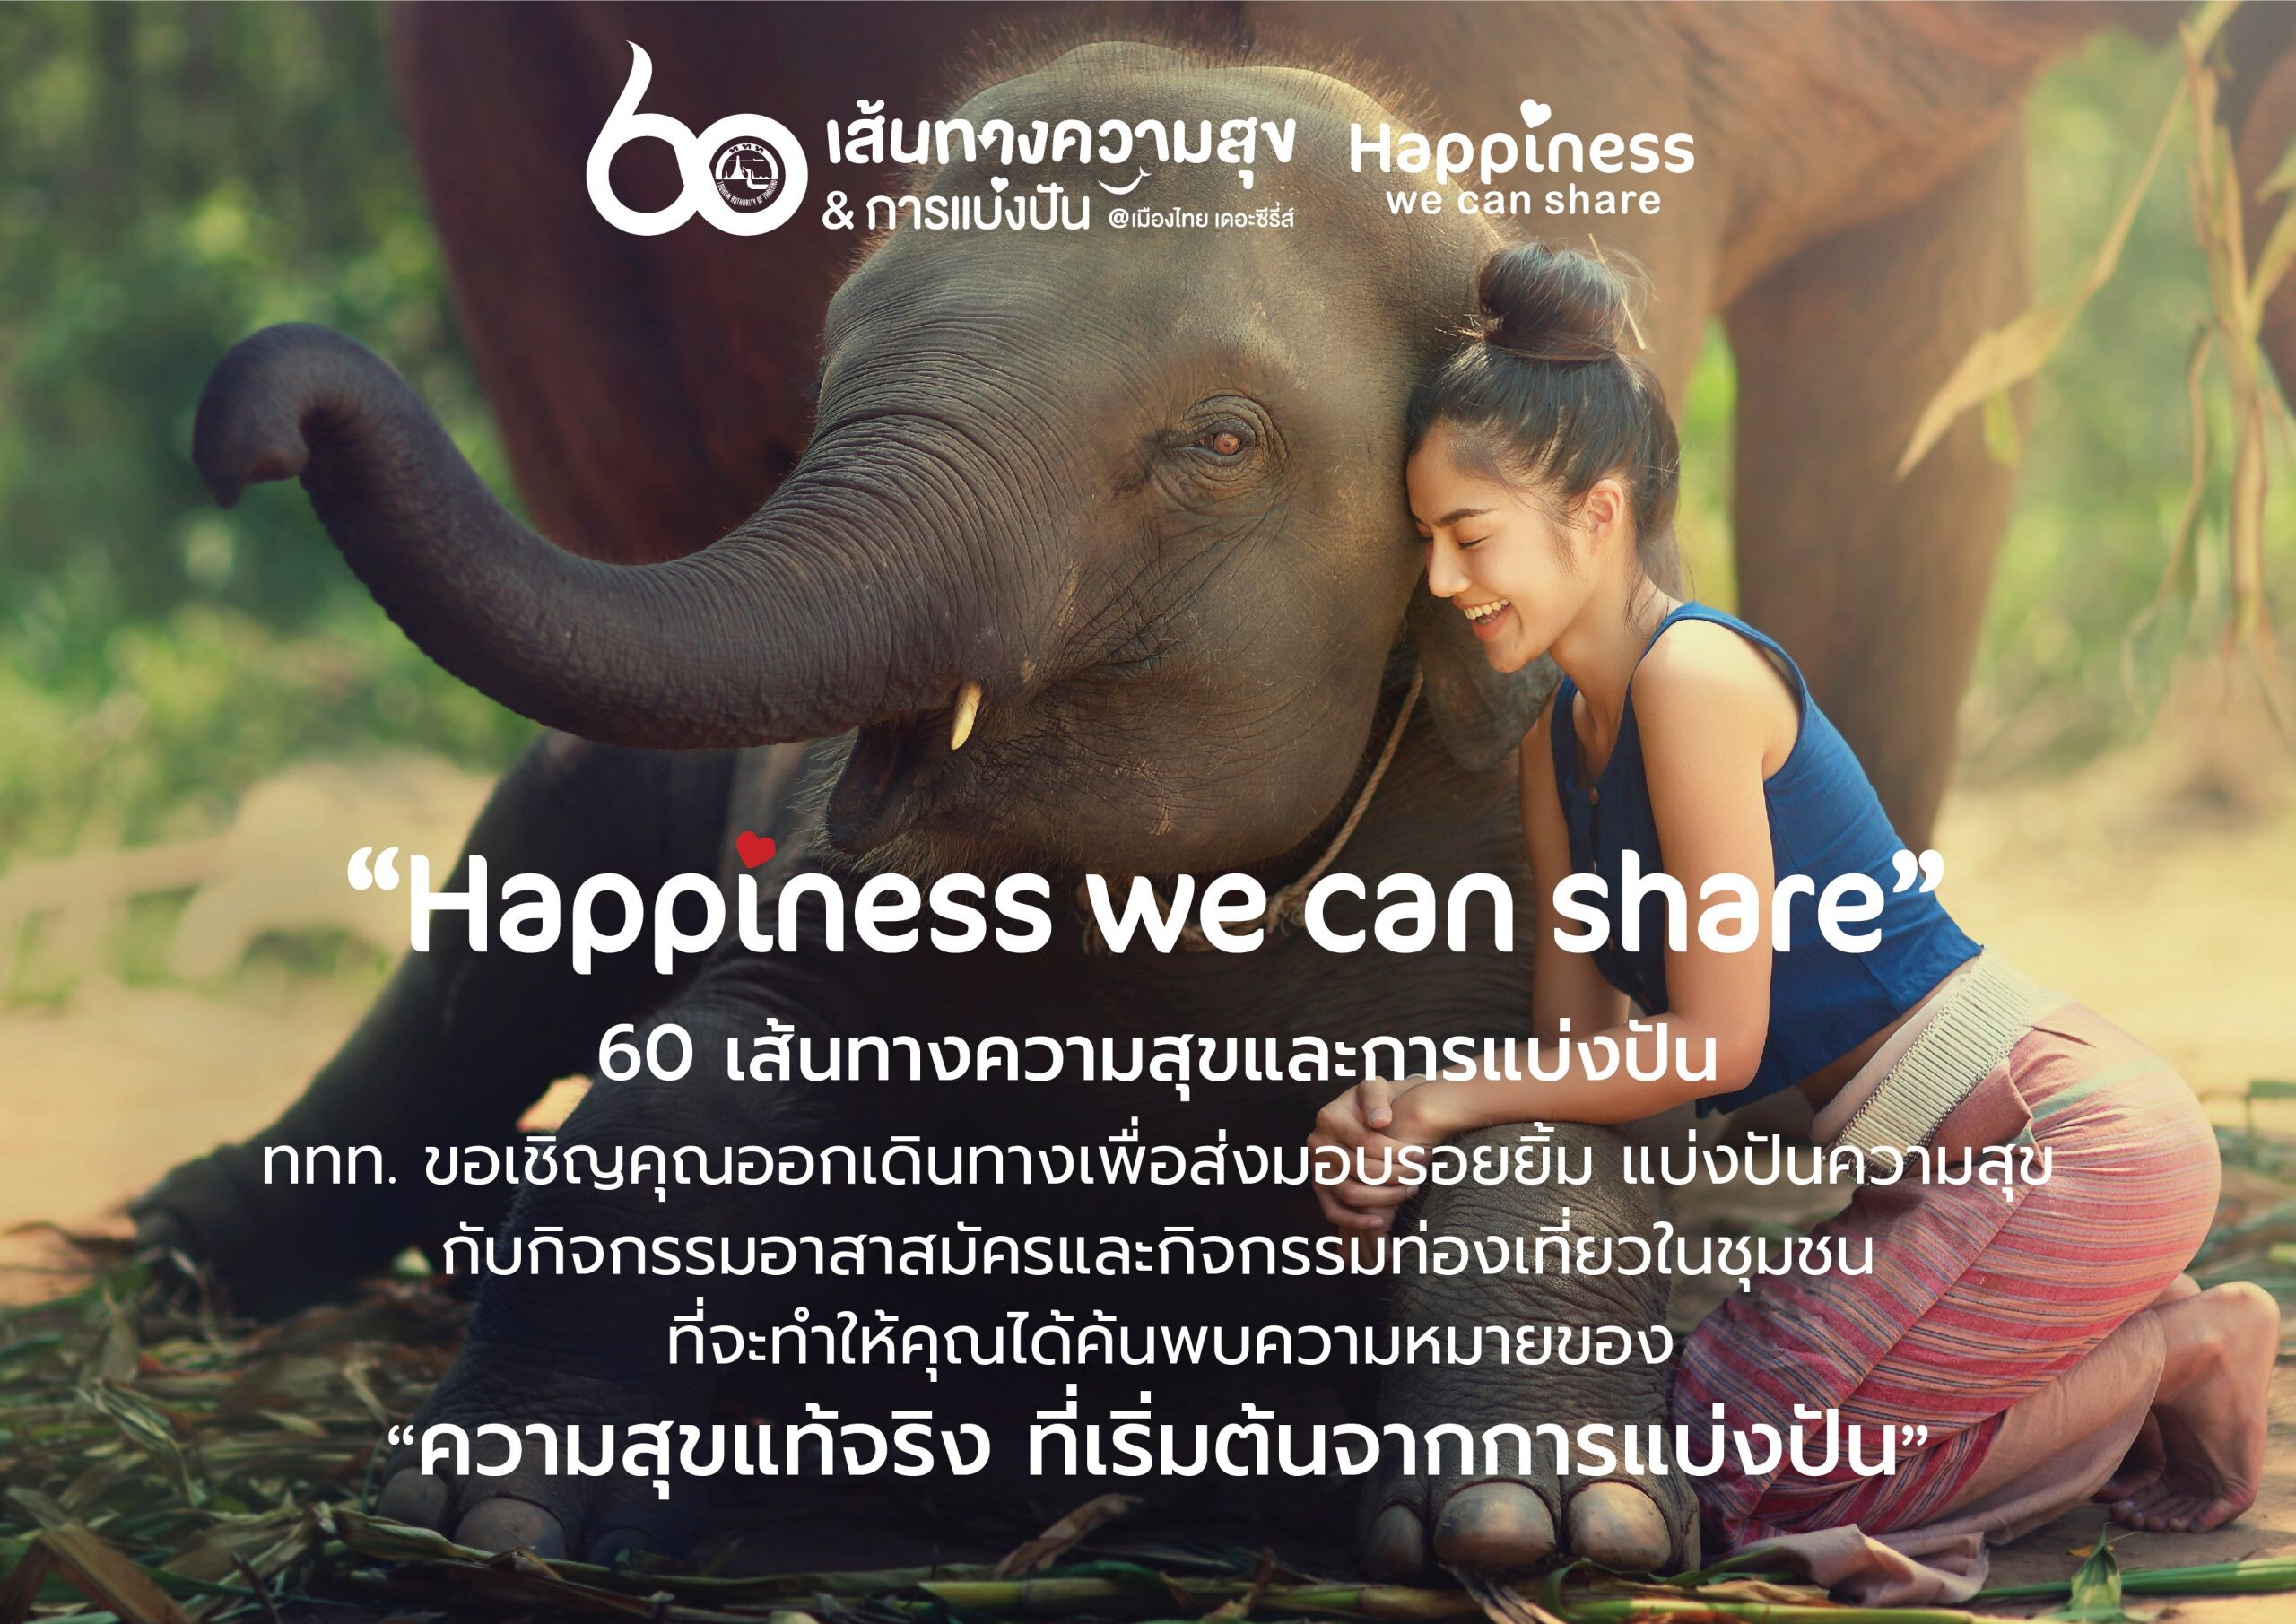 ททท. ชวนนักท่องเที่ยวออกเดินทางไปกับทริปท่องเที่ยวจิตอาสา  ทั่วไทยในแคมเปญ ”Happiness we can share”